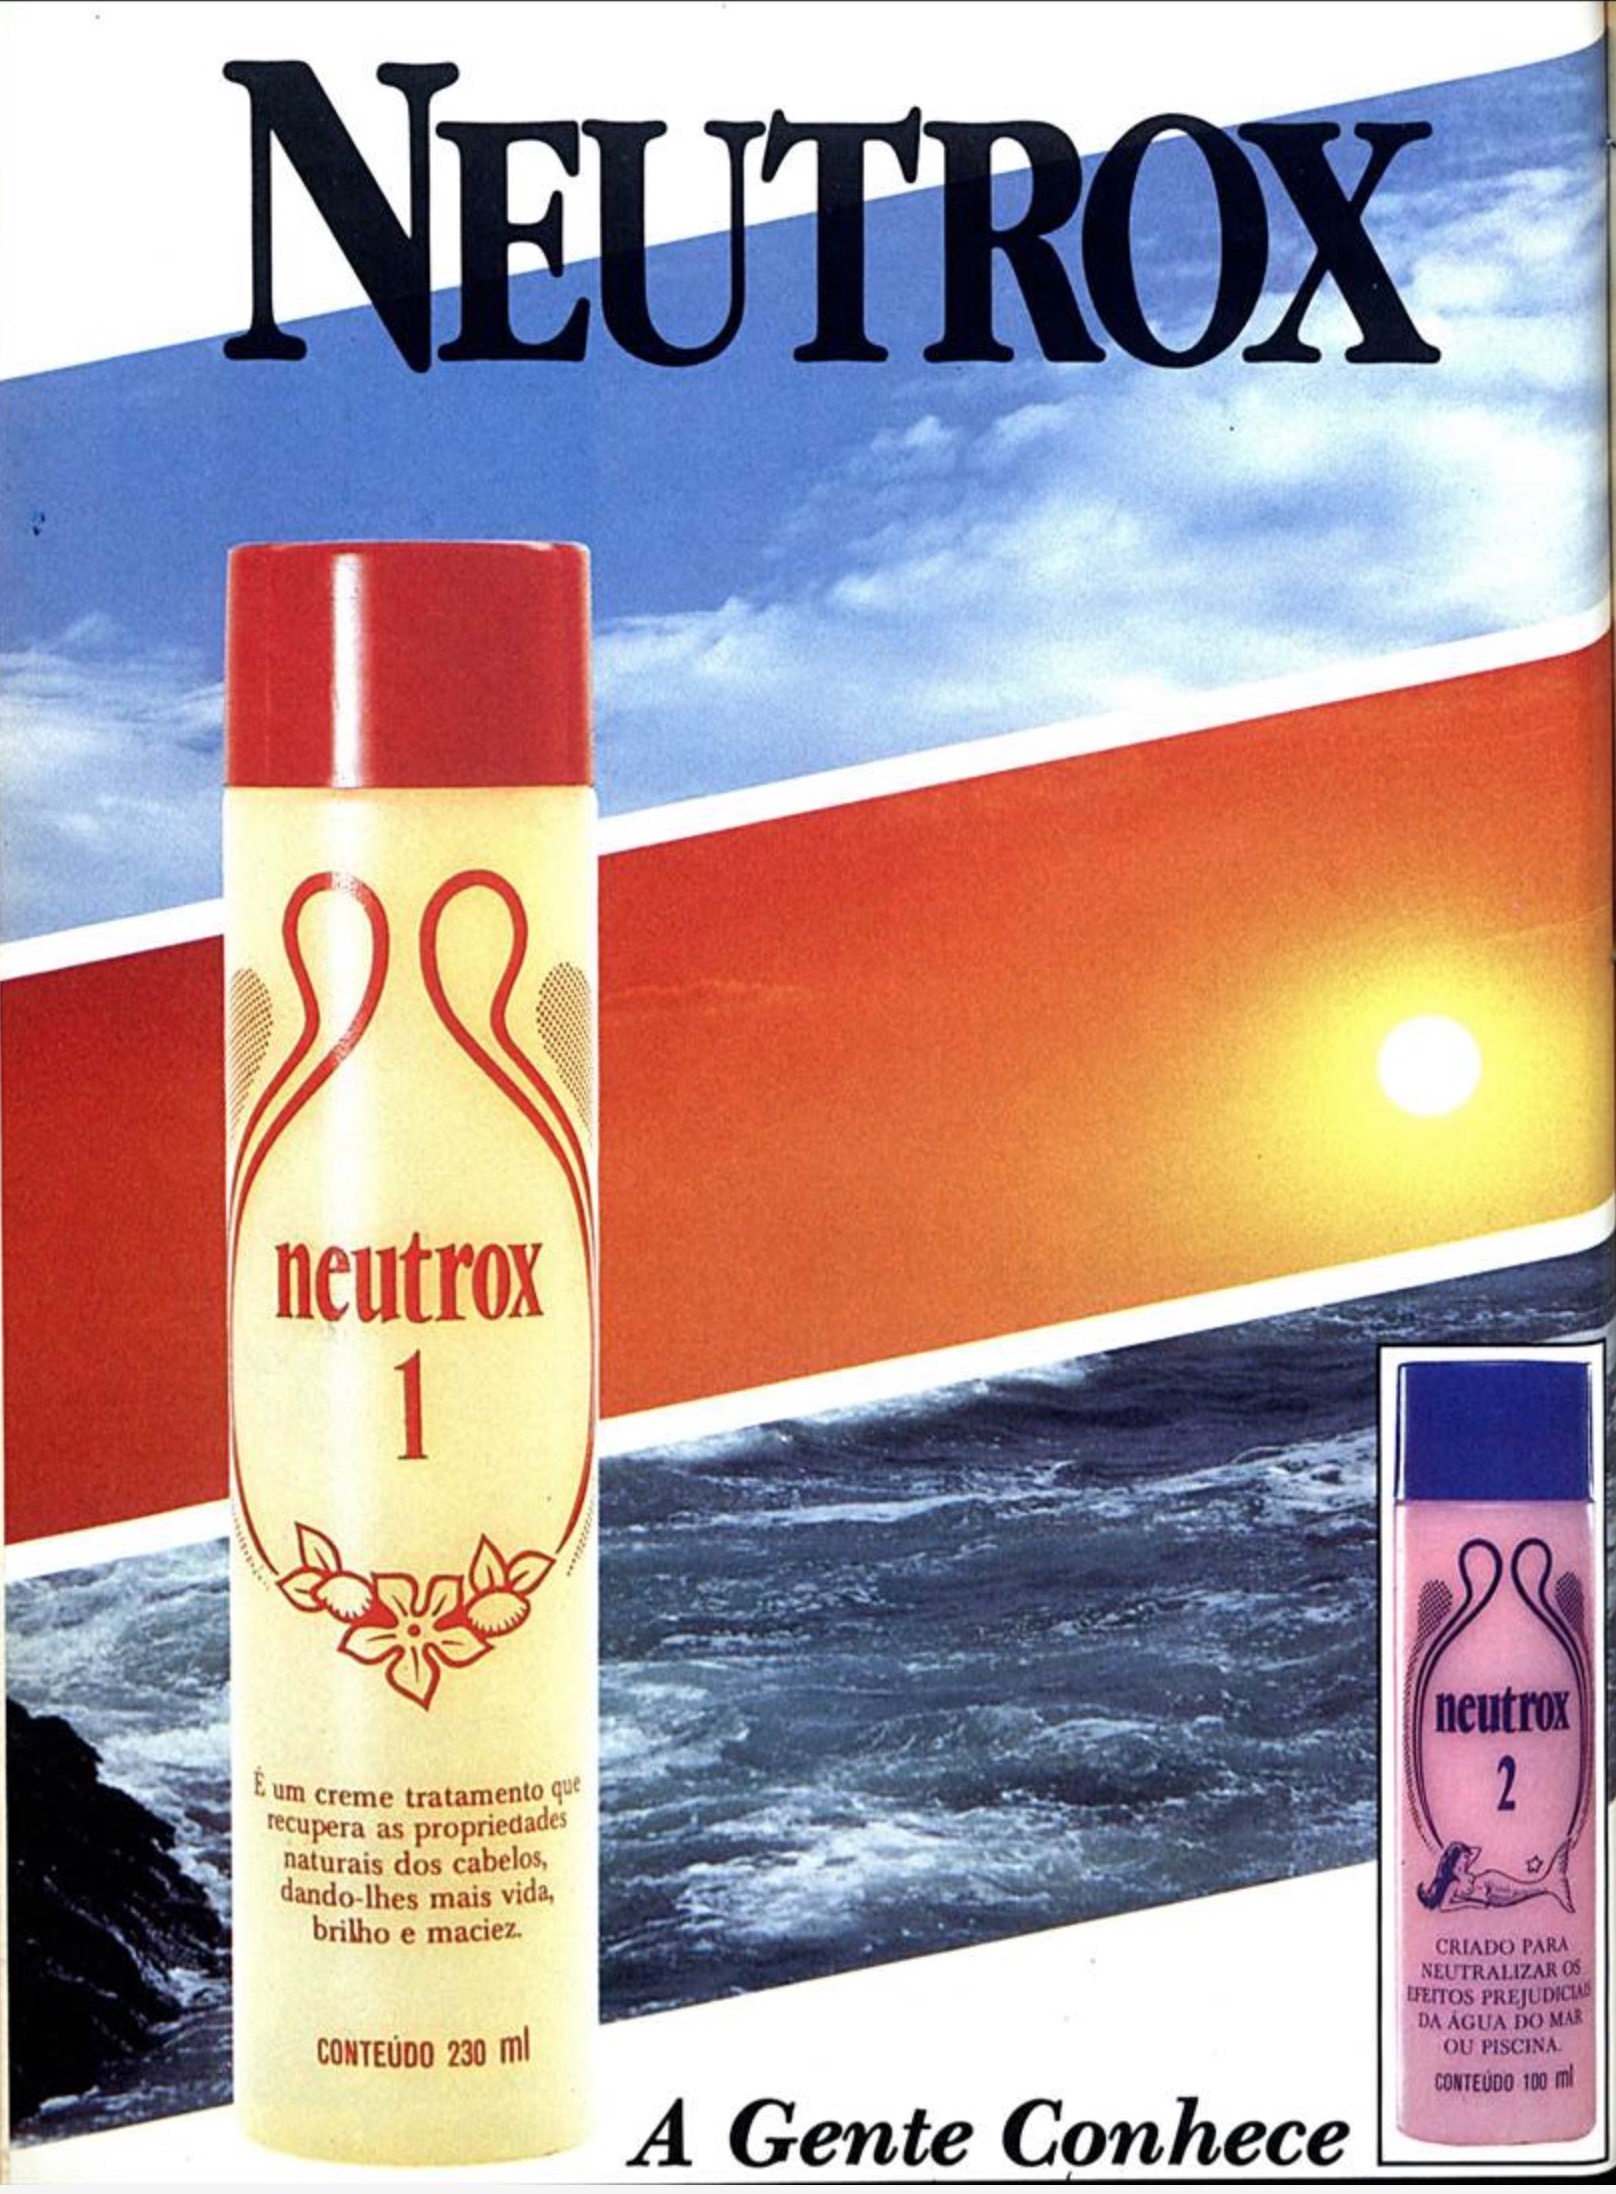 Campanha veiculada em 1986 apresentando os benefícios do Neutrox